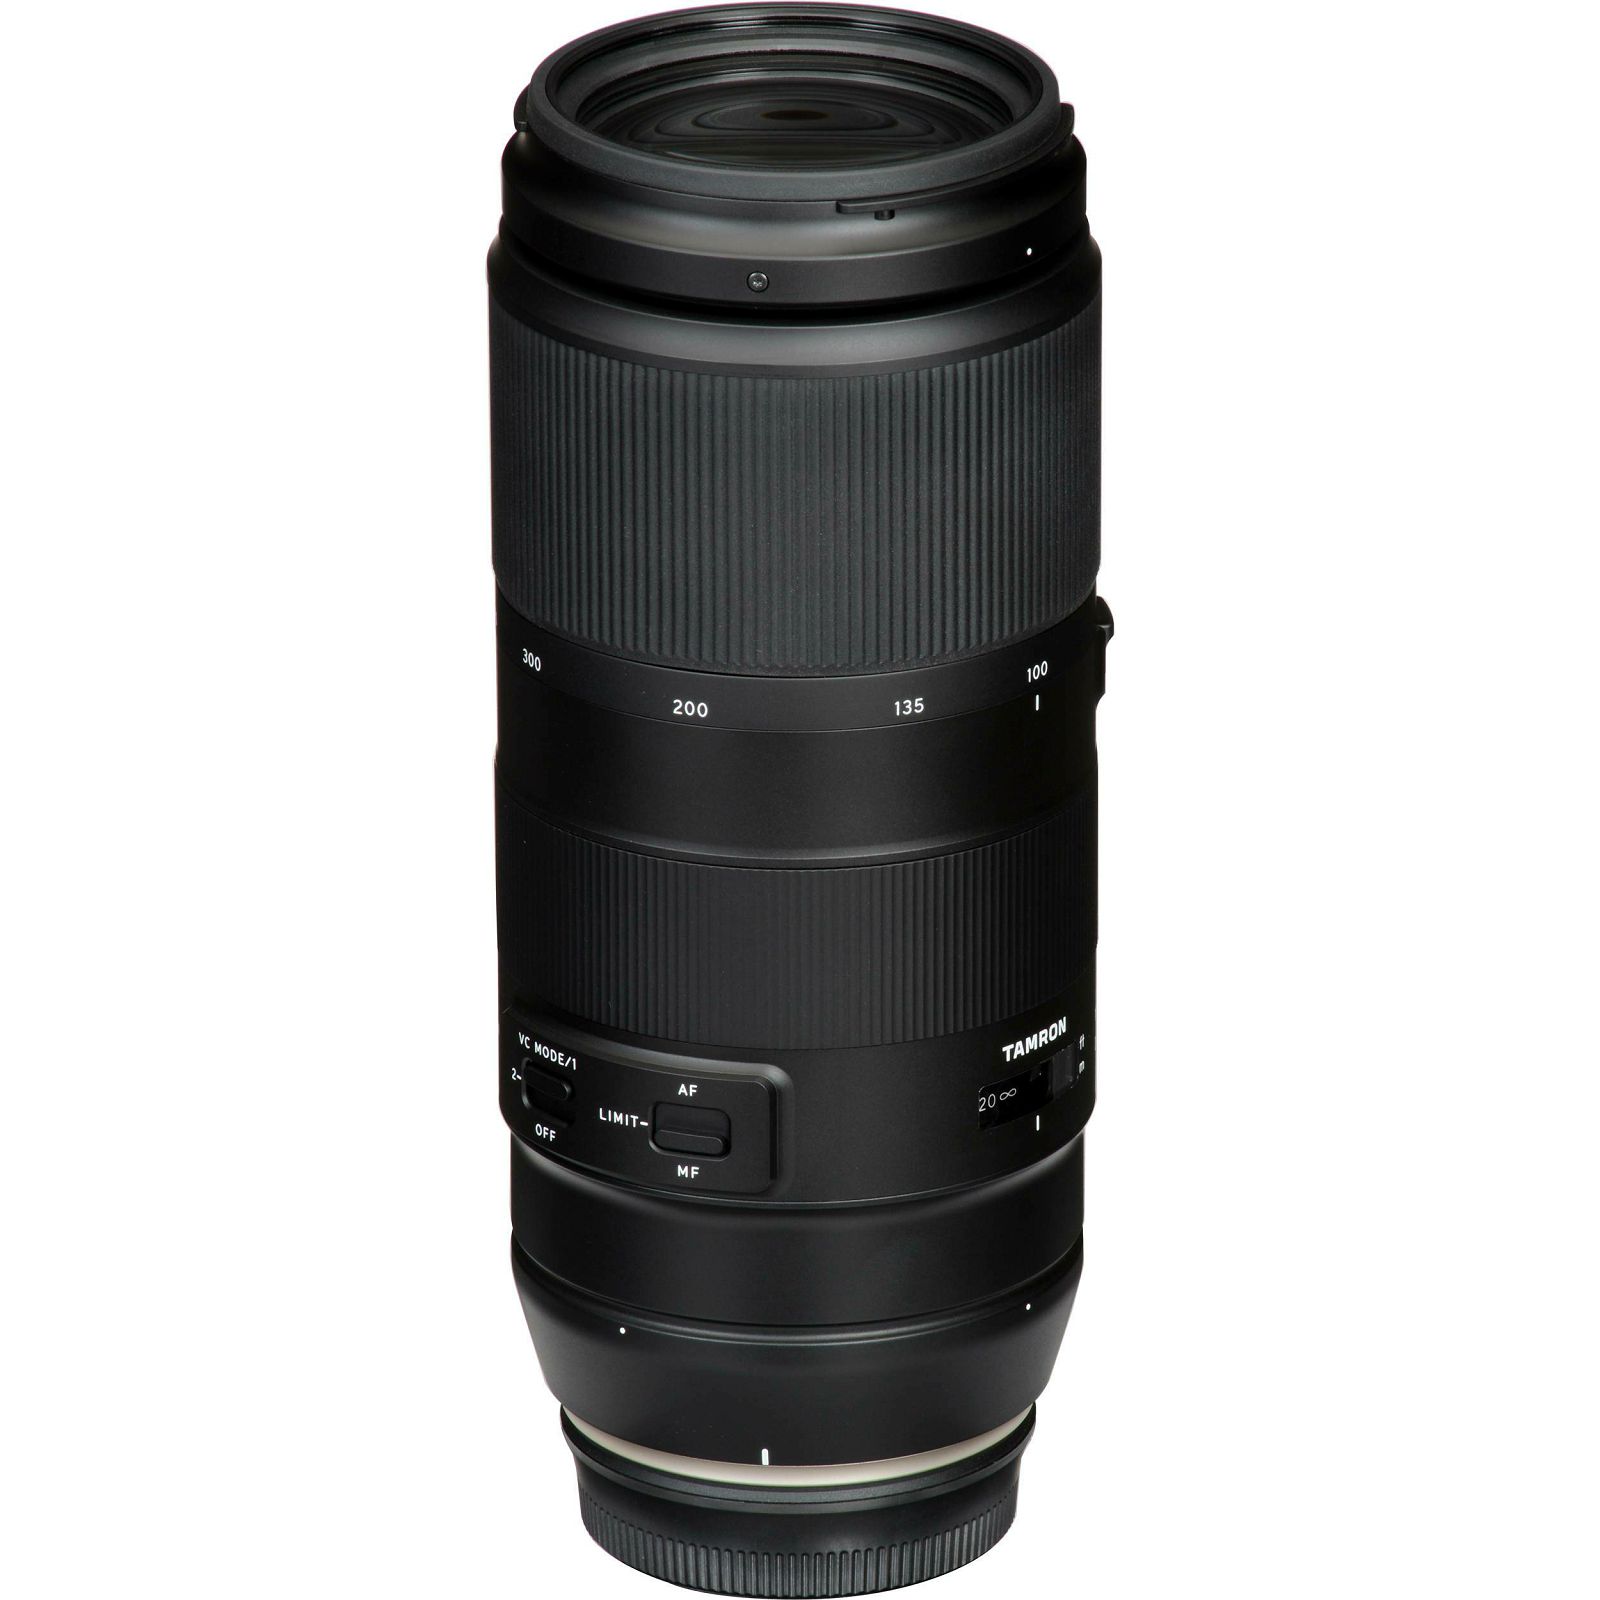 Tamron AF 100-400mm f/4.5-6.3 Di VC USD objektiv za Nikon FX (A035N)